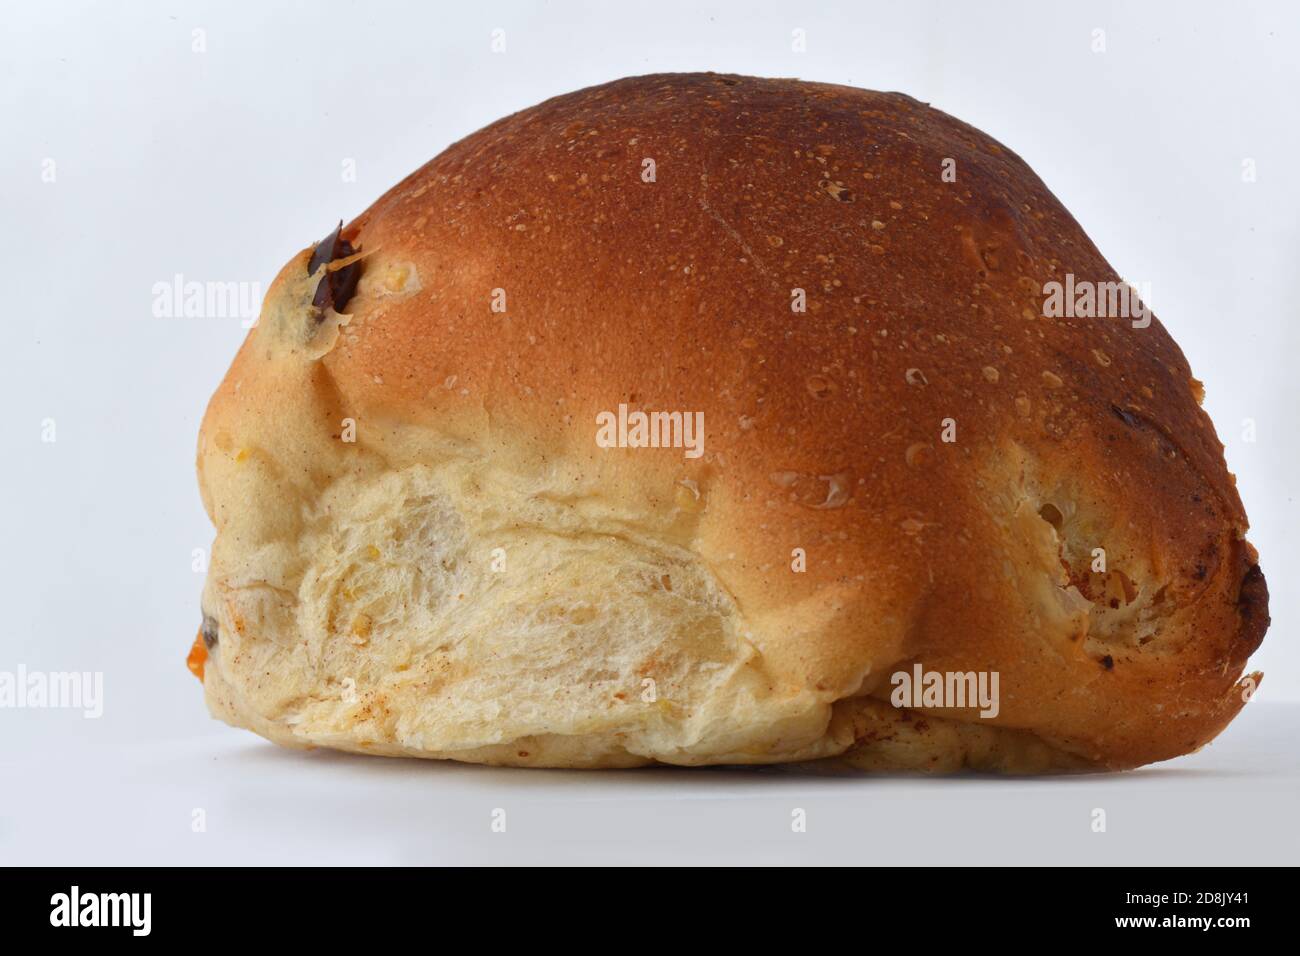 fruit bun on a white background Stock Photo